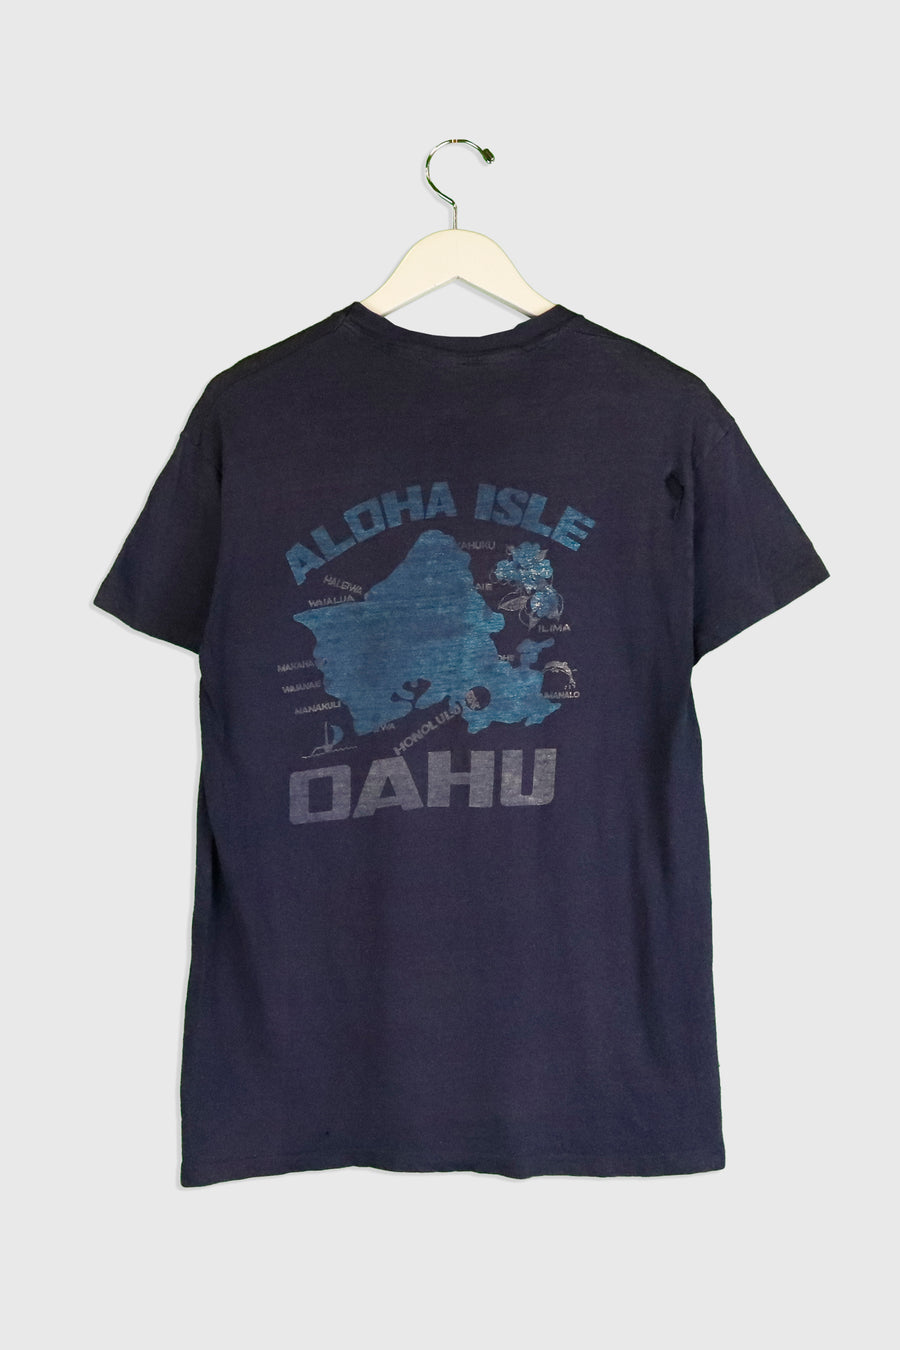 Vintage Aloha Isle Oahu Faded Graphic T Shirt Sz L